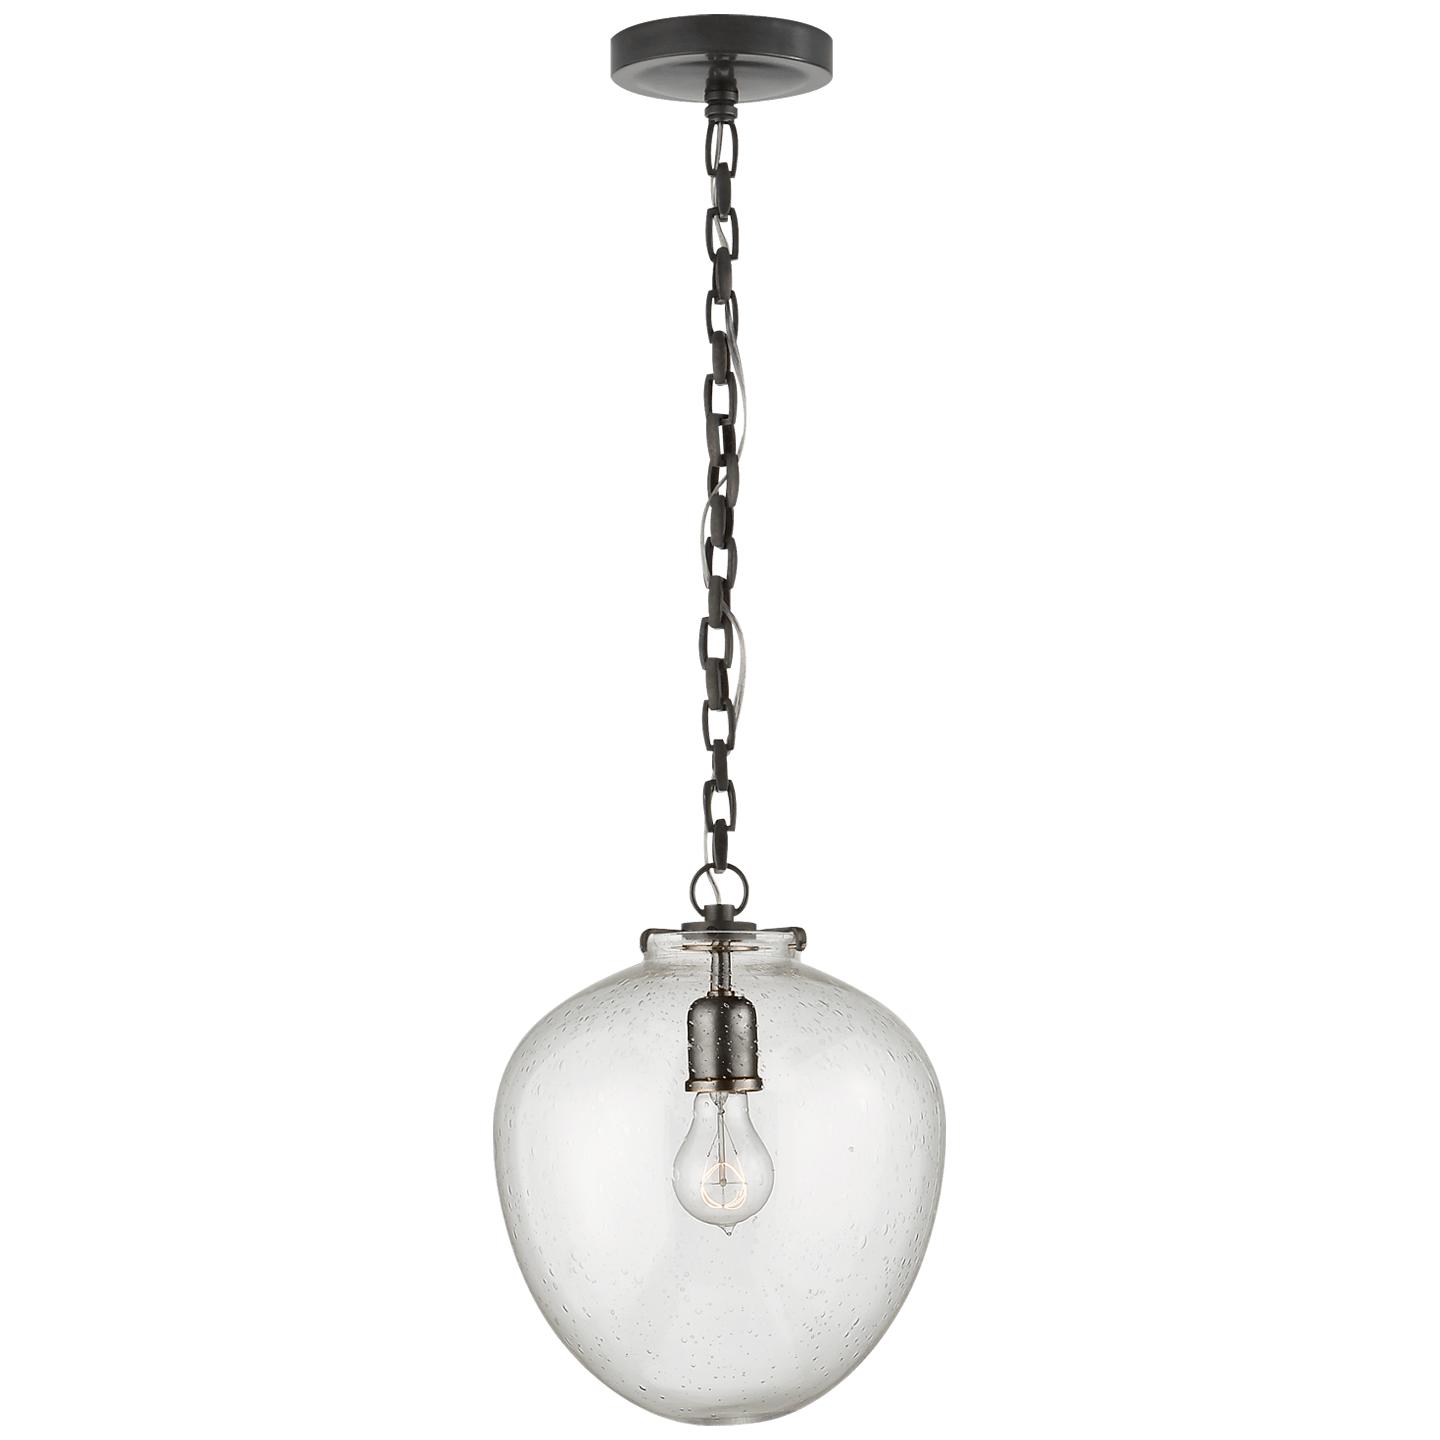 Купить Подвесной светильник Katie Acorn Pendant в интернет-магазине roooms.ru